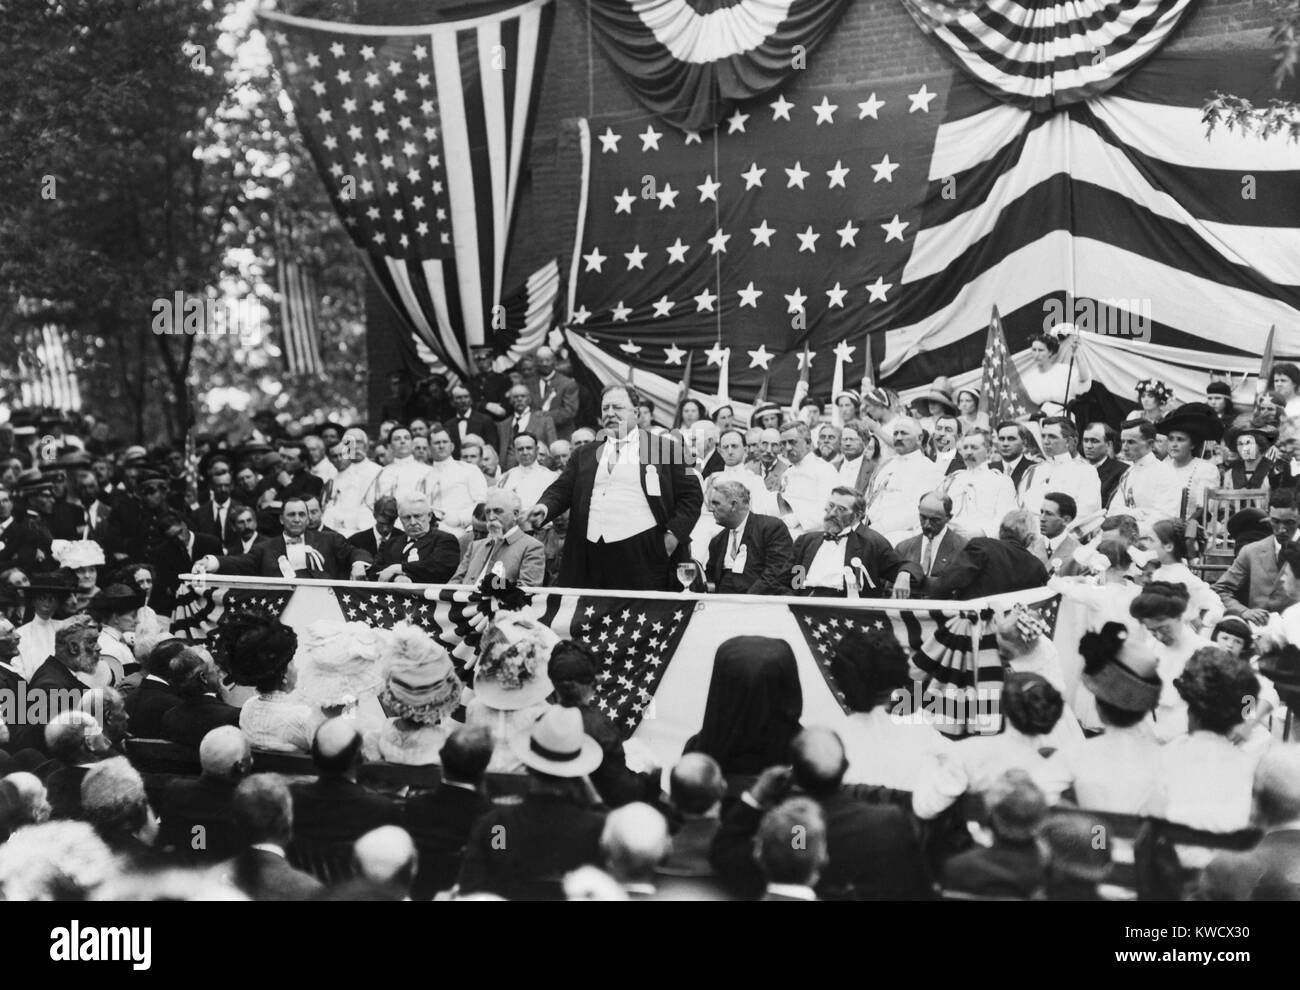 50e anniversaire de la célébration de la première bataille de Bull Run, le 18 juillet 1911. Le président William Howard Taft prononce le discours d'une foule de 10 000 personnes. De 300 125 anciens combattants confédérés et fédéral ont participé à la guerre civile 'Paix' (BSLOC Jubilé 2017 2 120) Banque D'Images